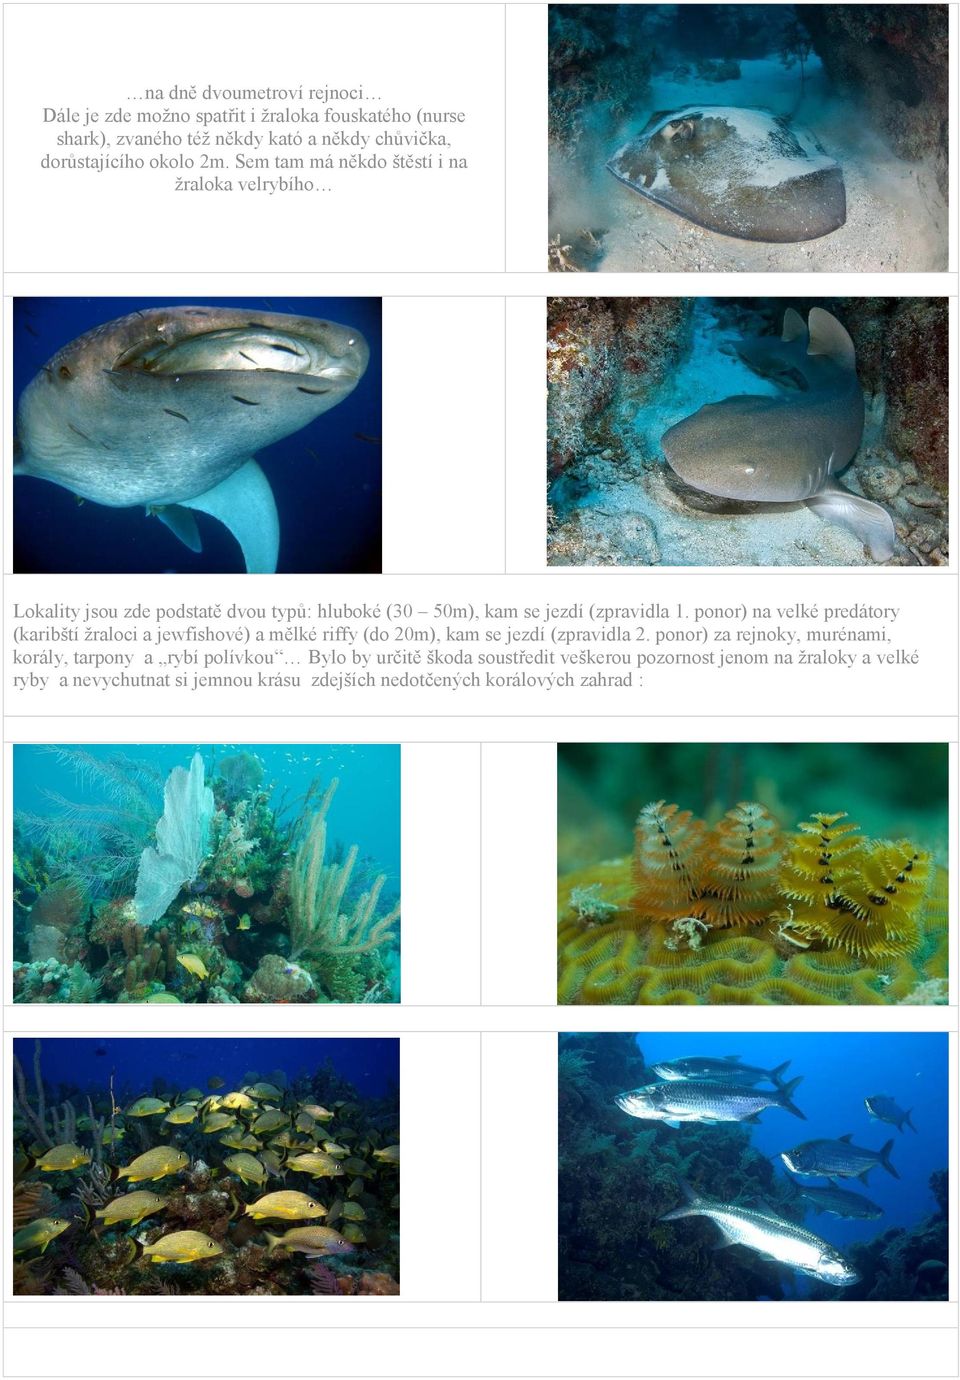 ponor) na velké predátory (karibští žraloci a jewfishové) a mělké riffy (do 20m), kam se jezdí (zpravidla 2.